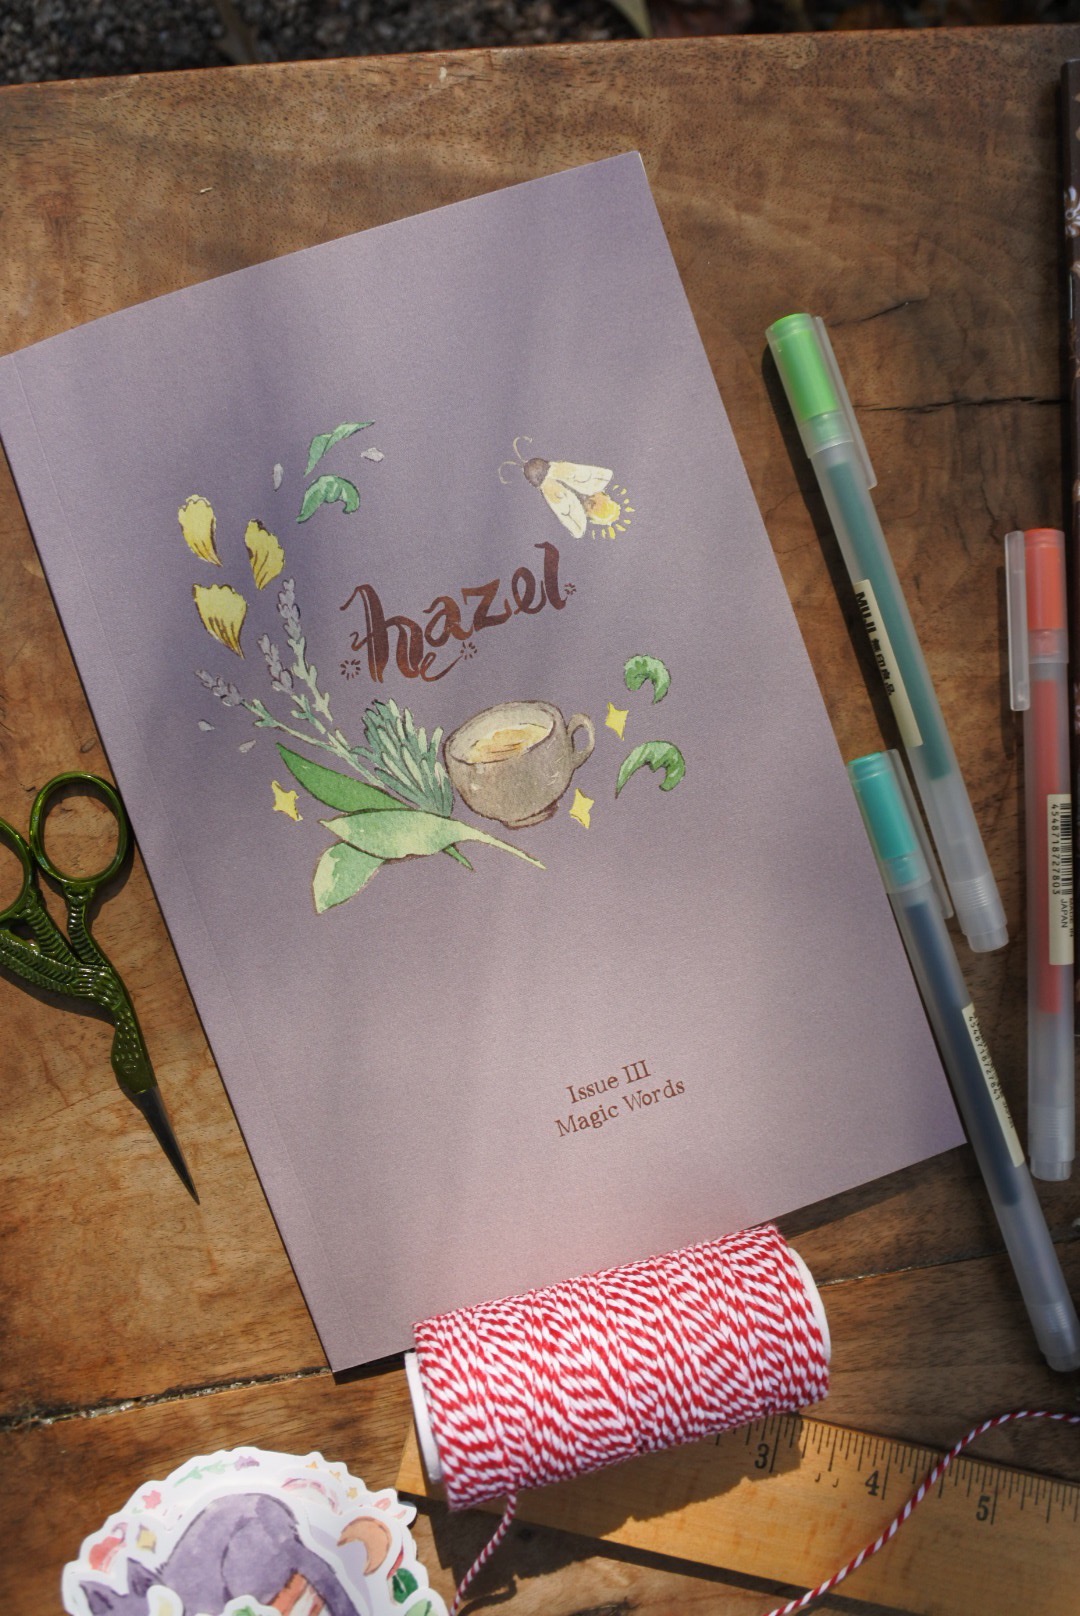 Hazel Issue III: Magic Words